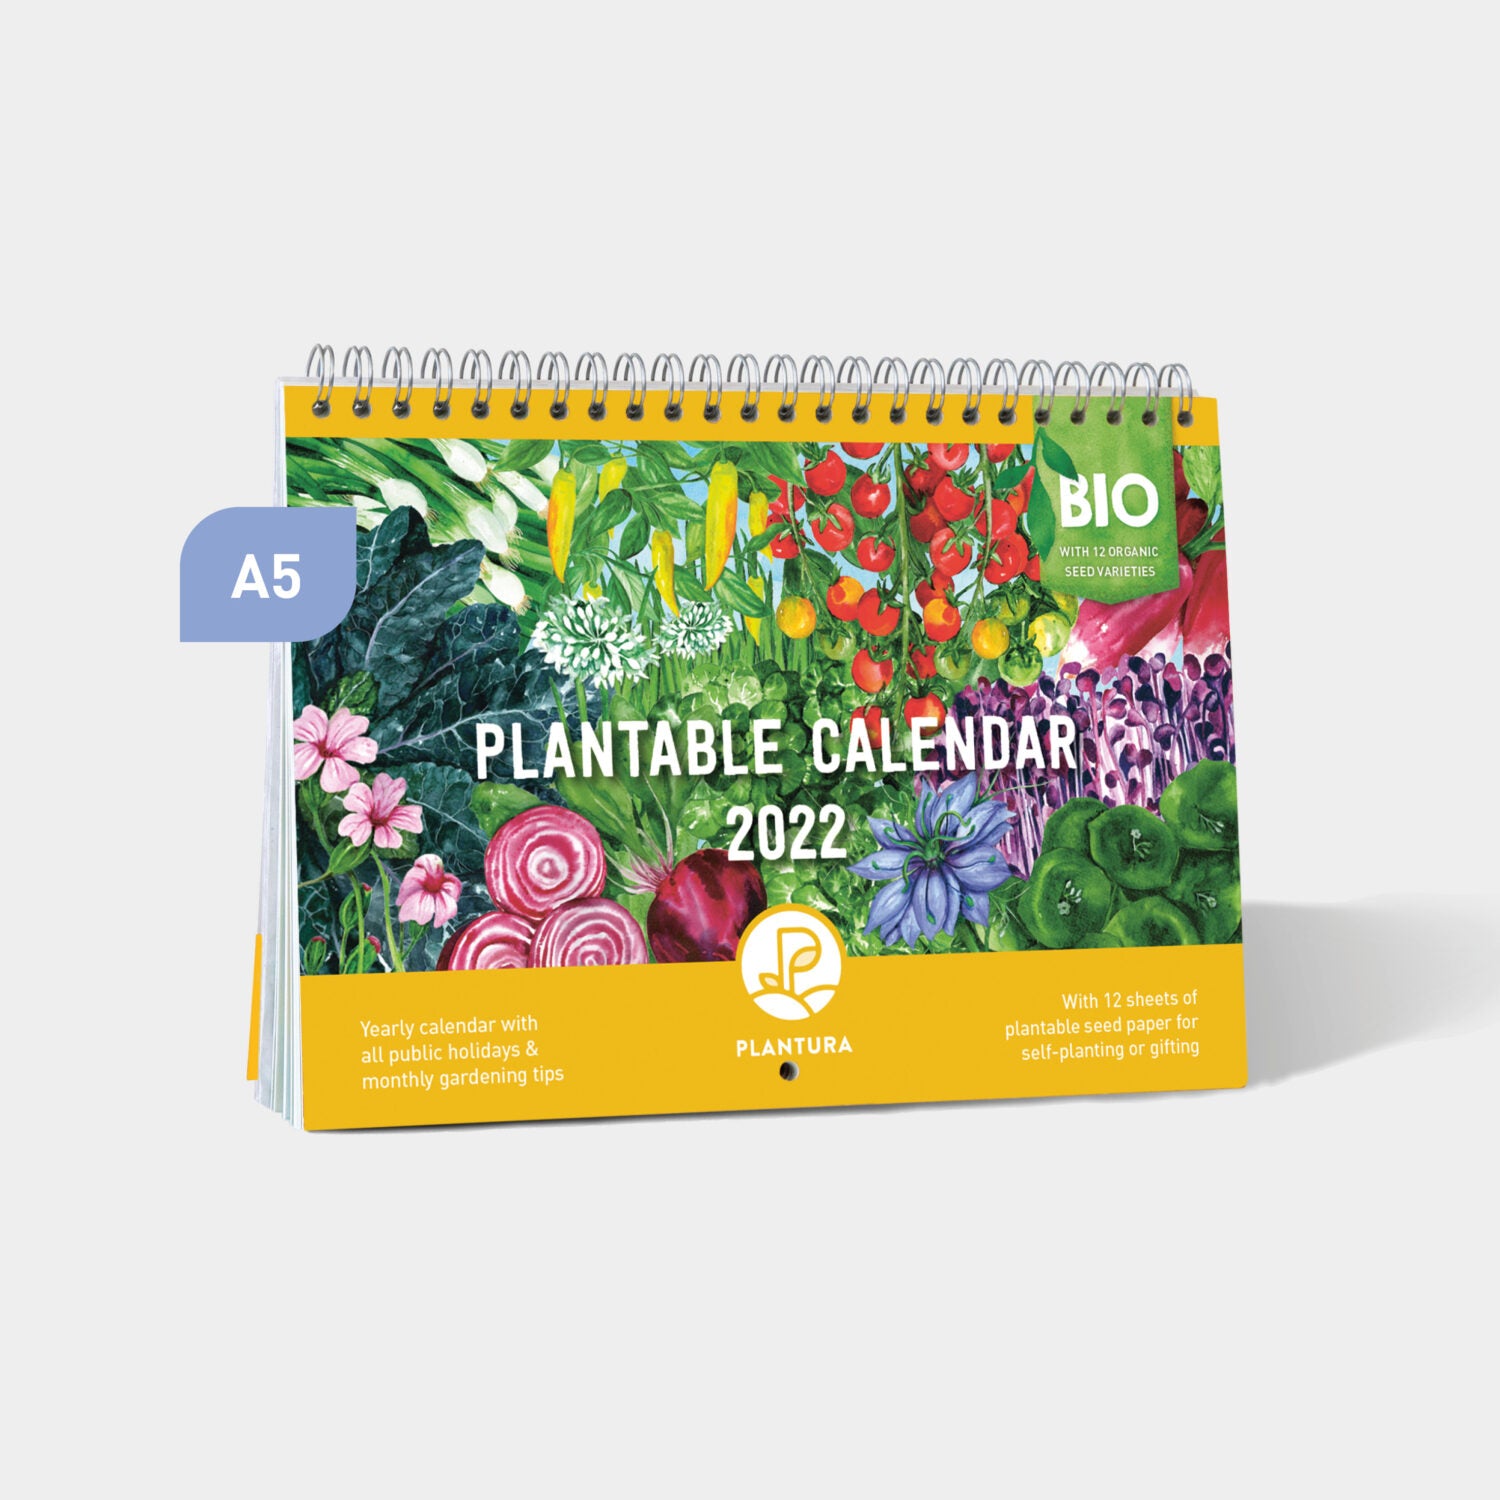 Plantura_Einpflanzbarer_Kalender_02